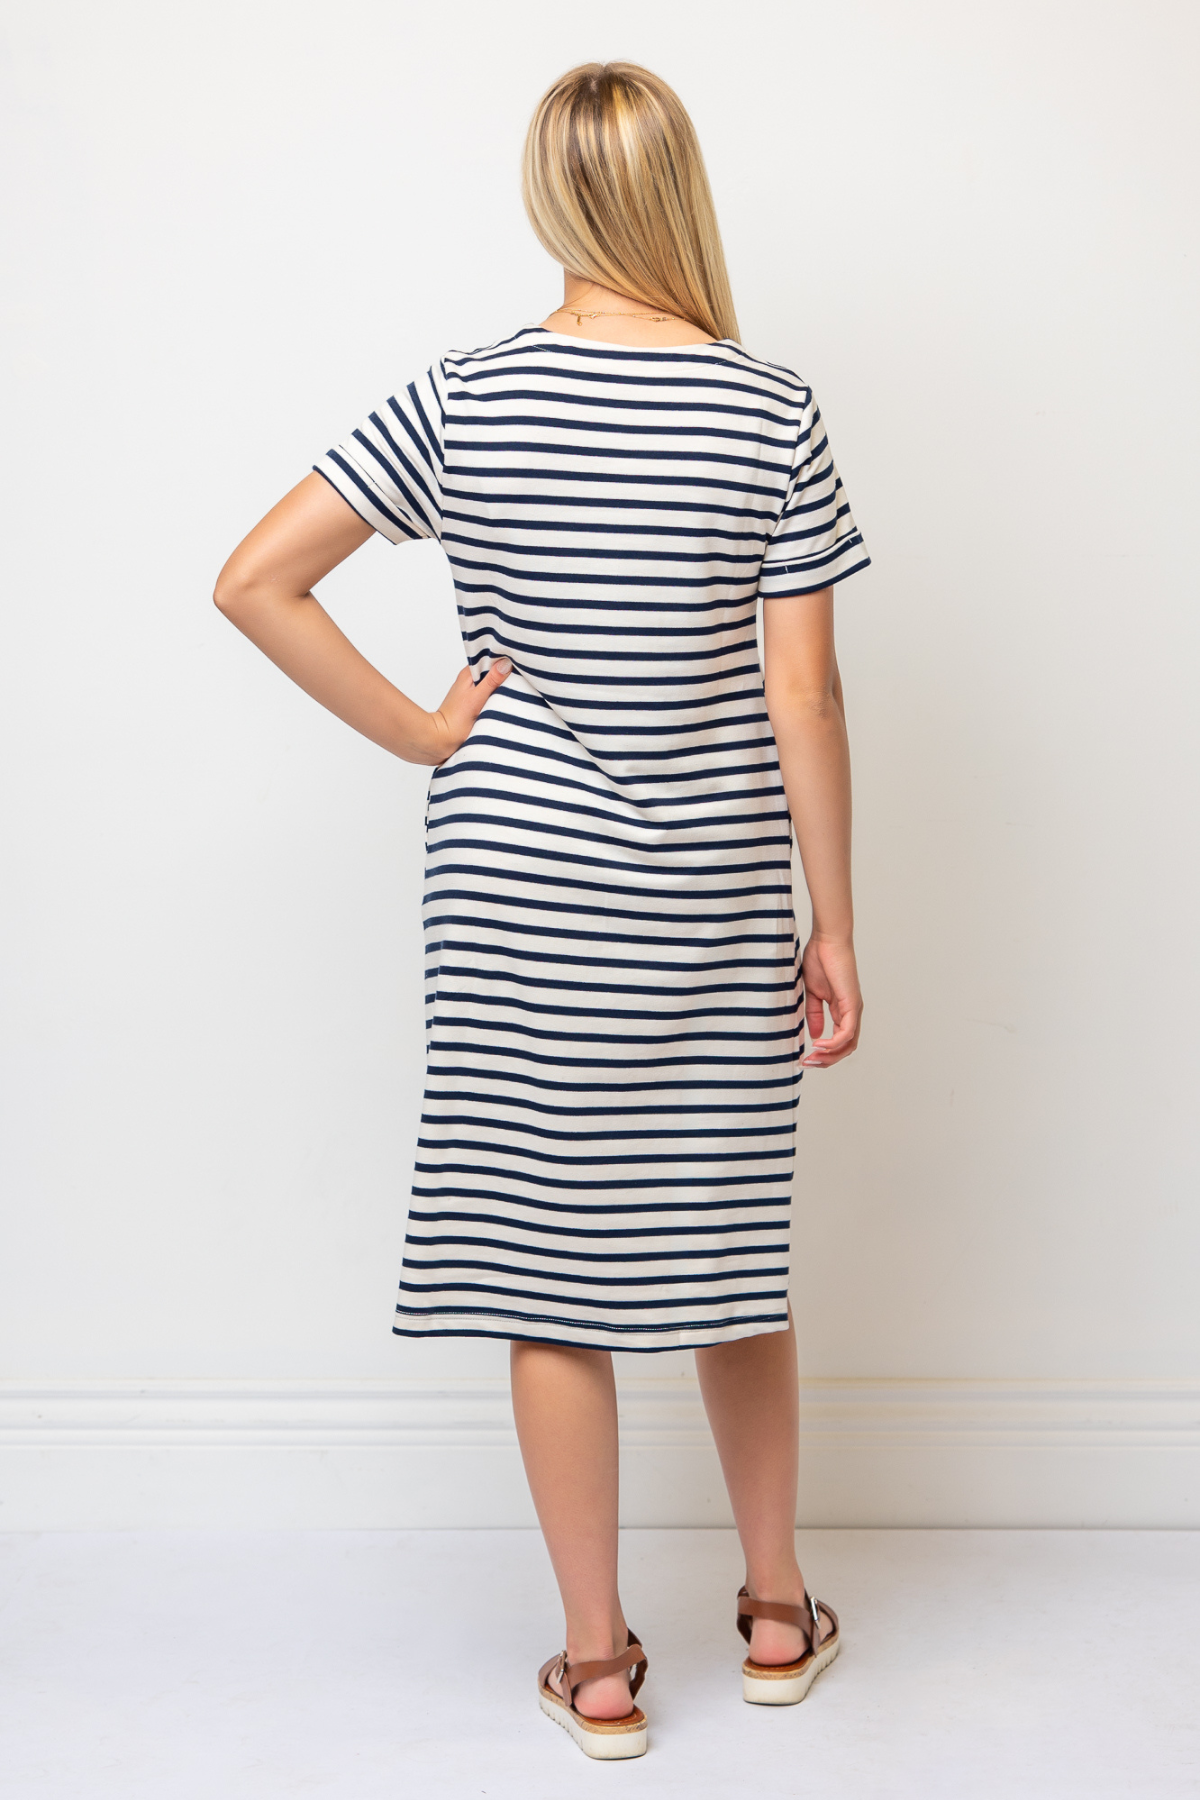 Celine Stripe Dress in Navy/Beige